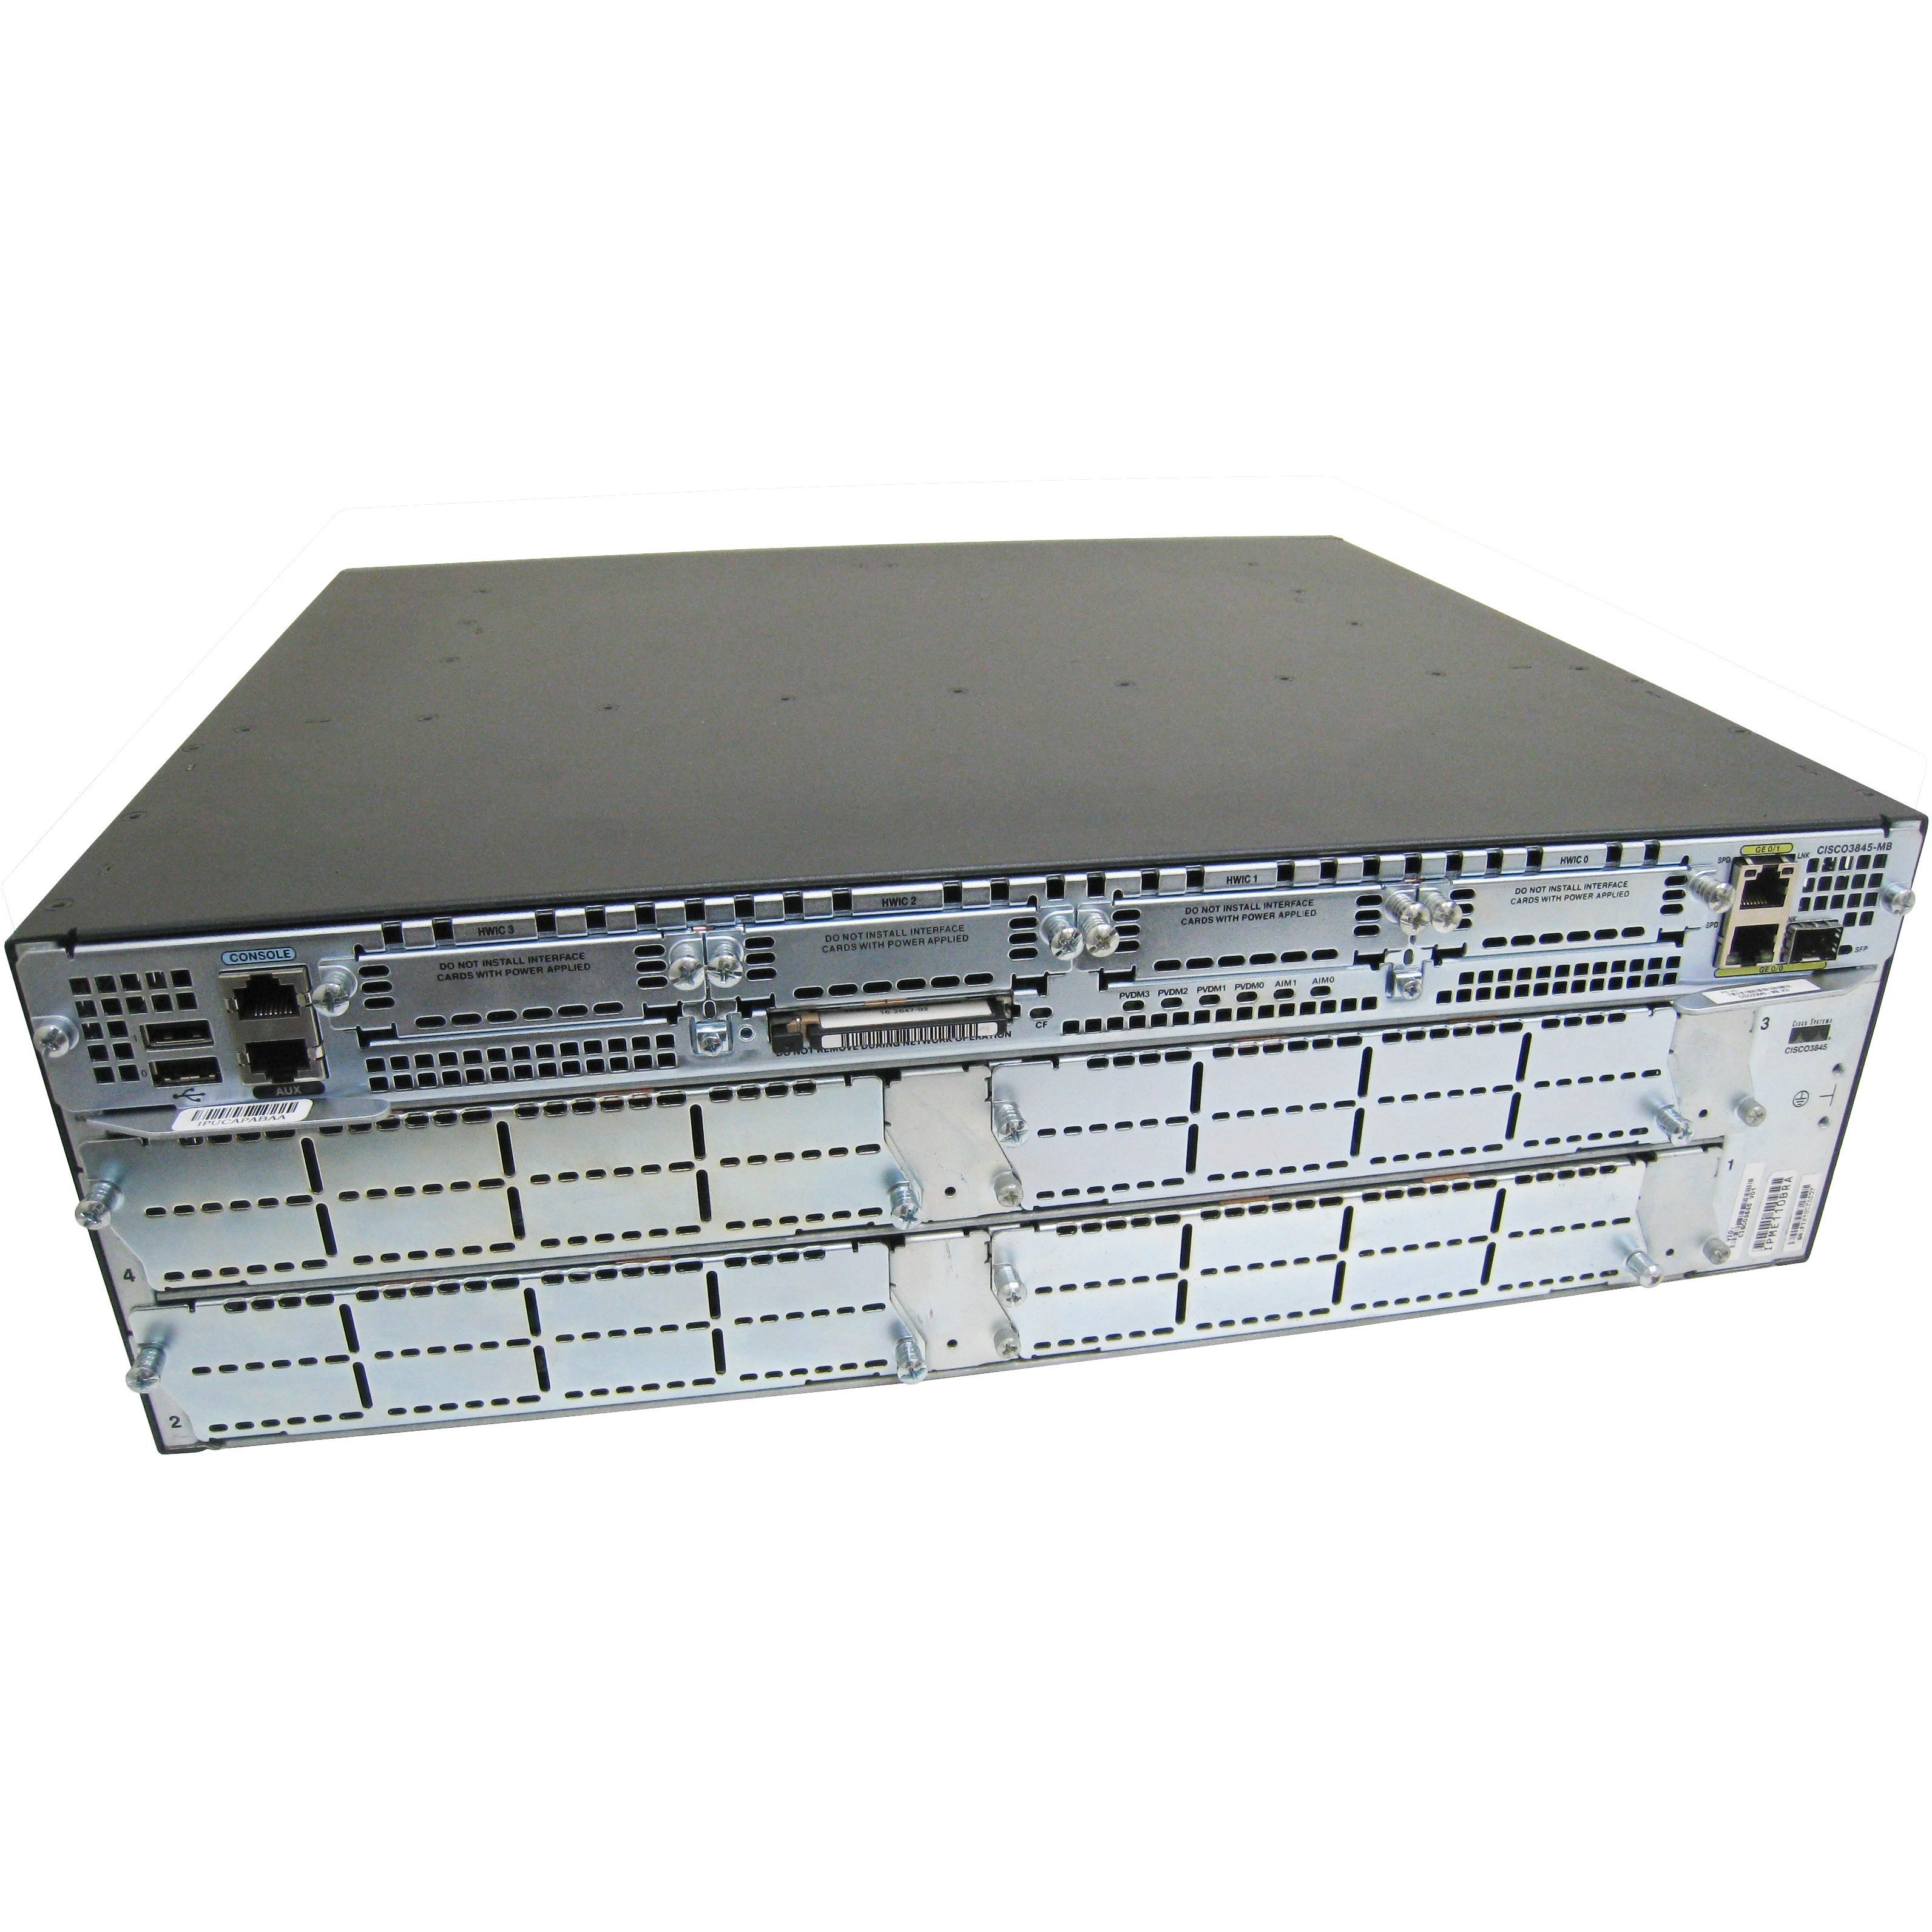 Cisco CISCO3845-DC